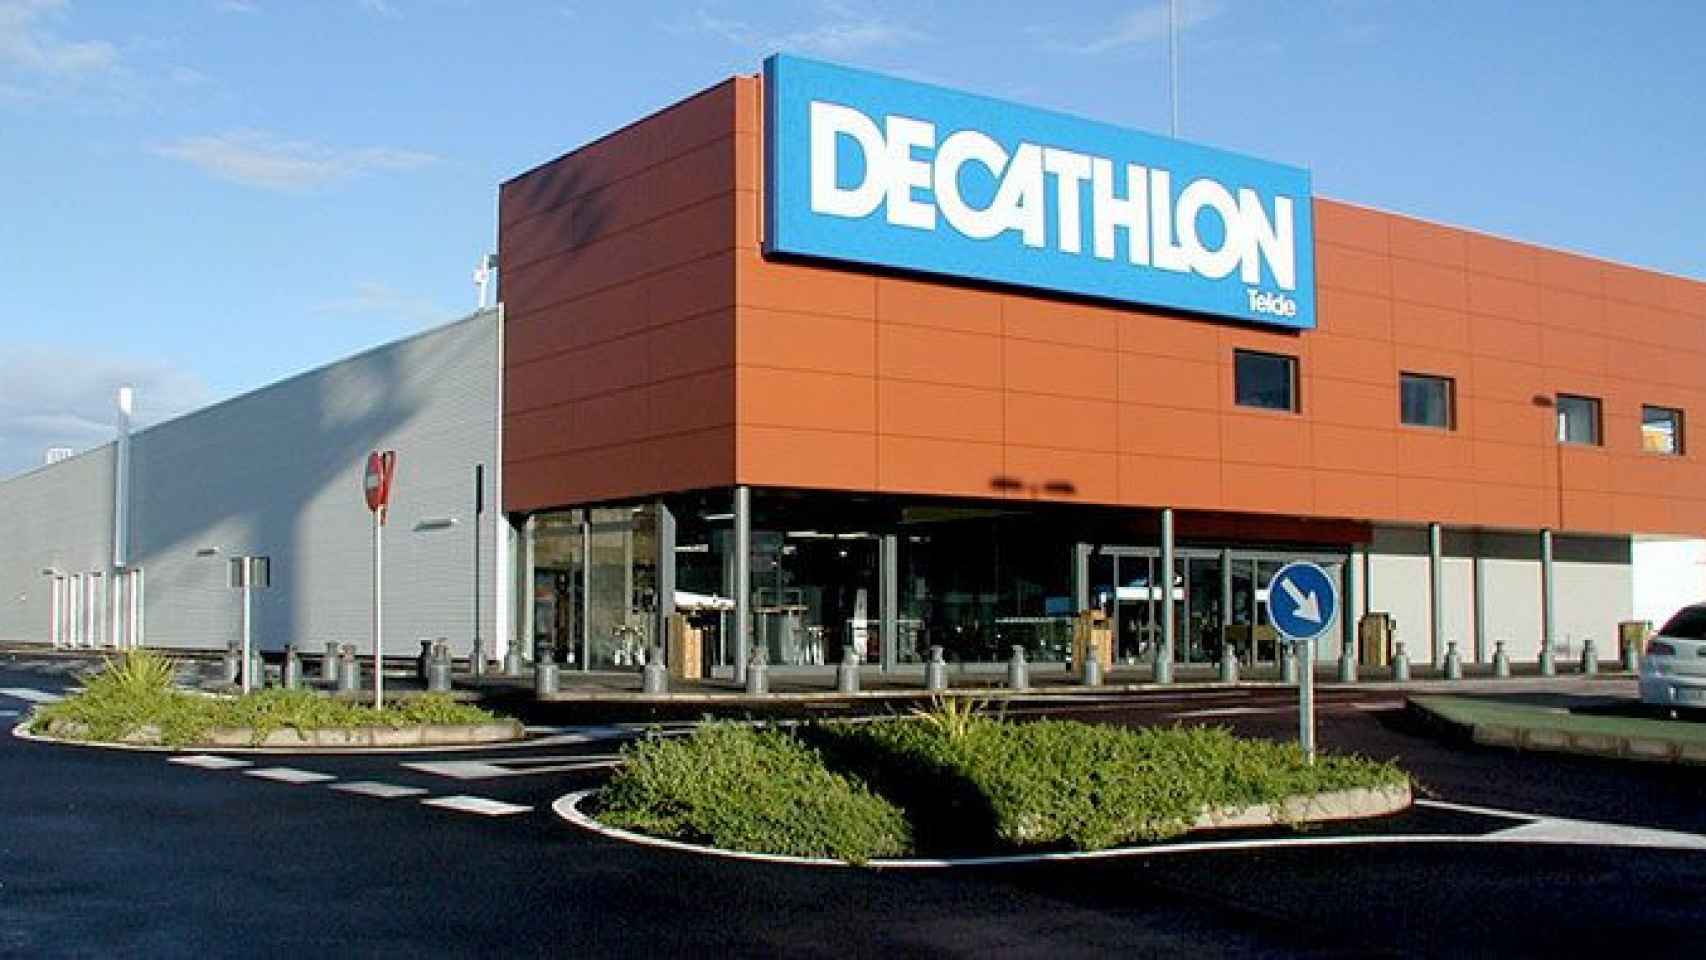 El centro comercial Decathlon, que fue atracado con violencia, está situado en un polígono industrial en las afueras de Terrassa / CG